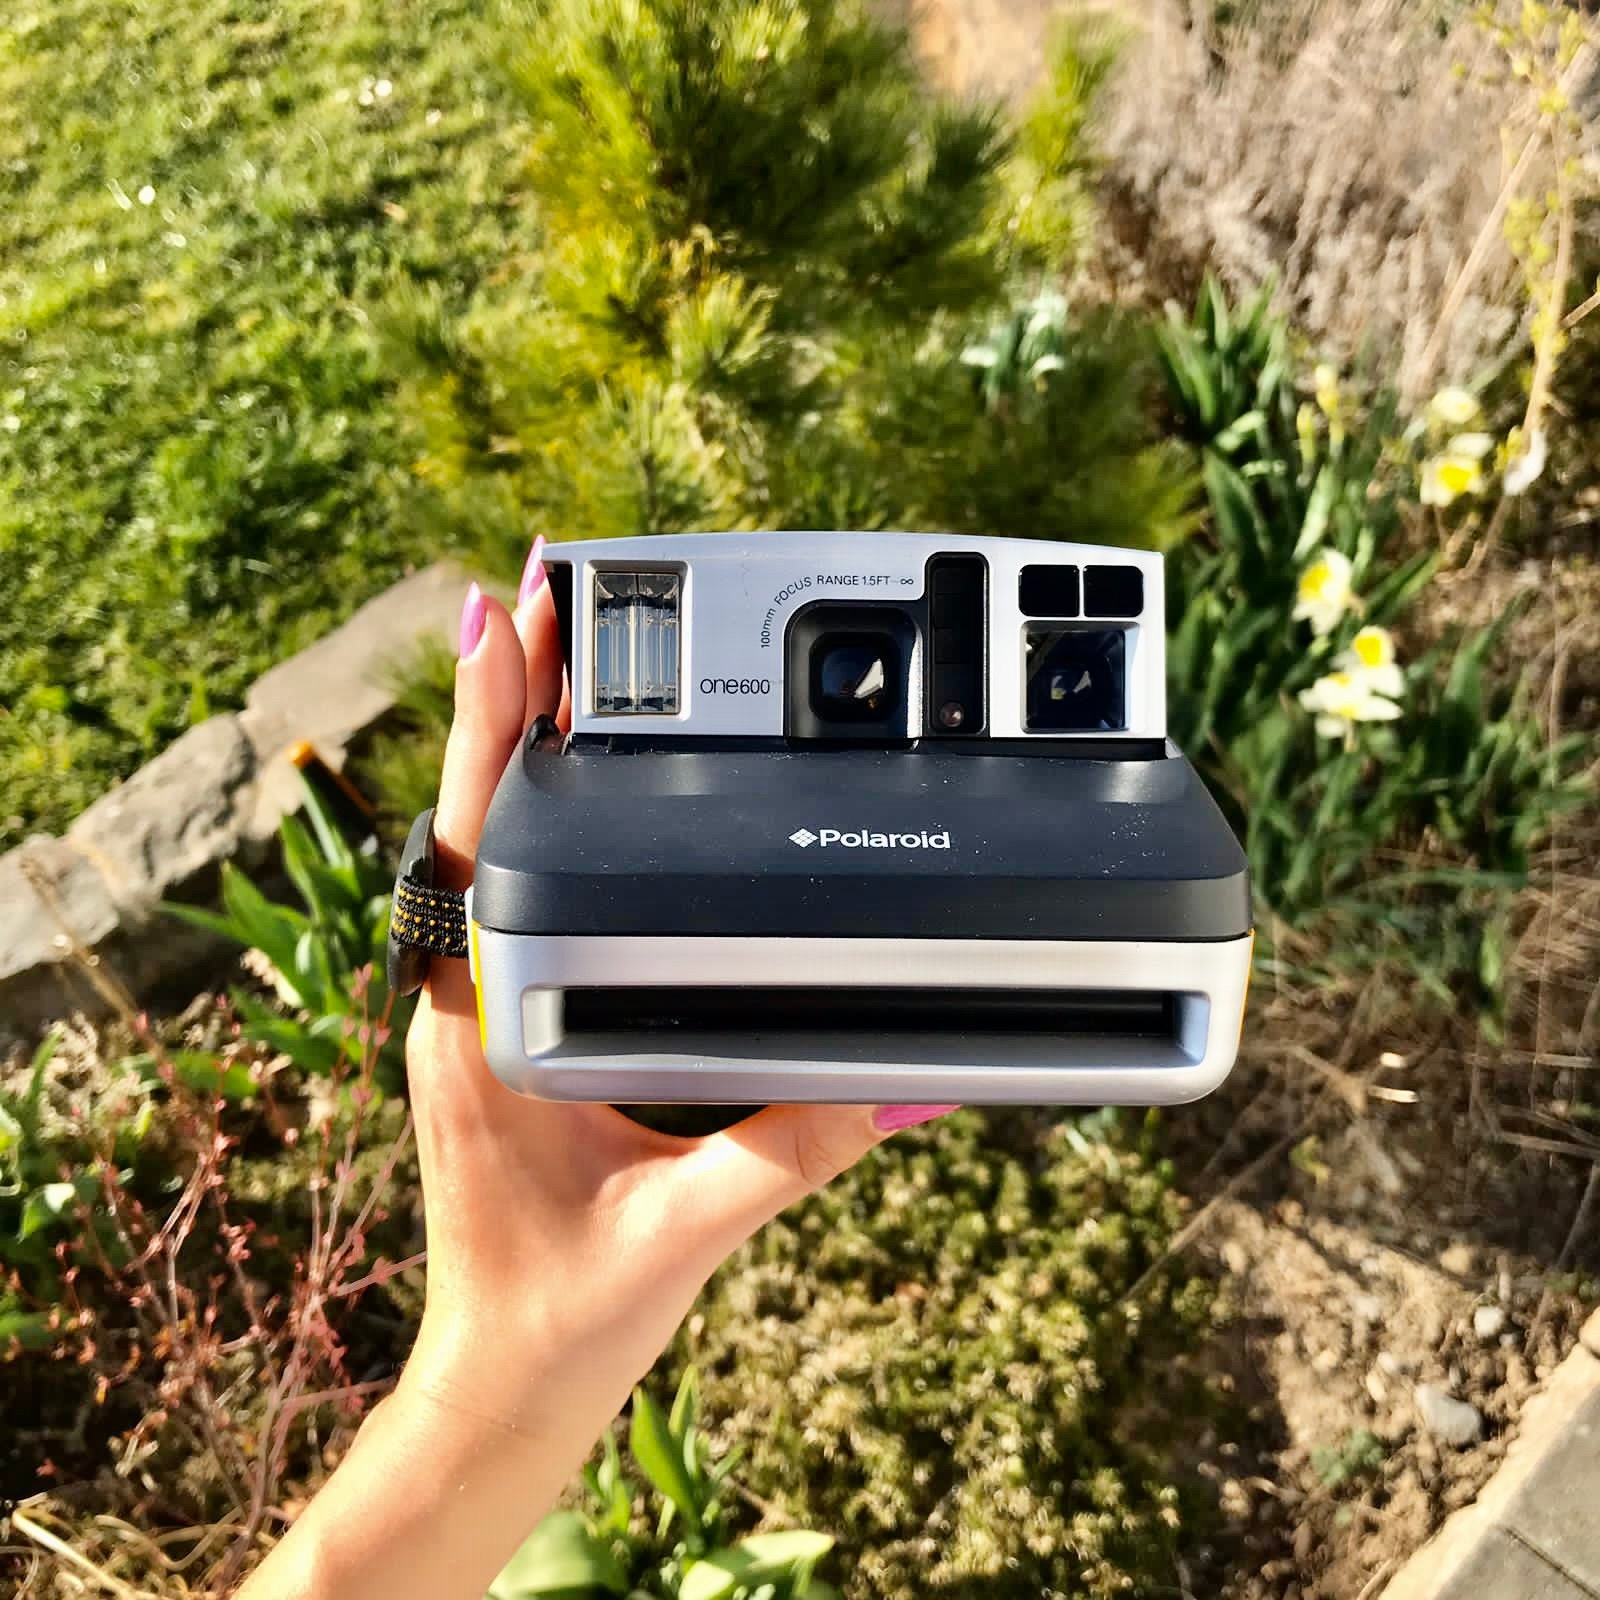 スピード対応 全国送料無料 Polaroid one600 pro